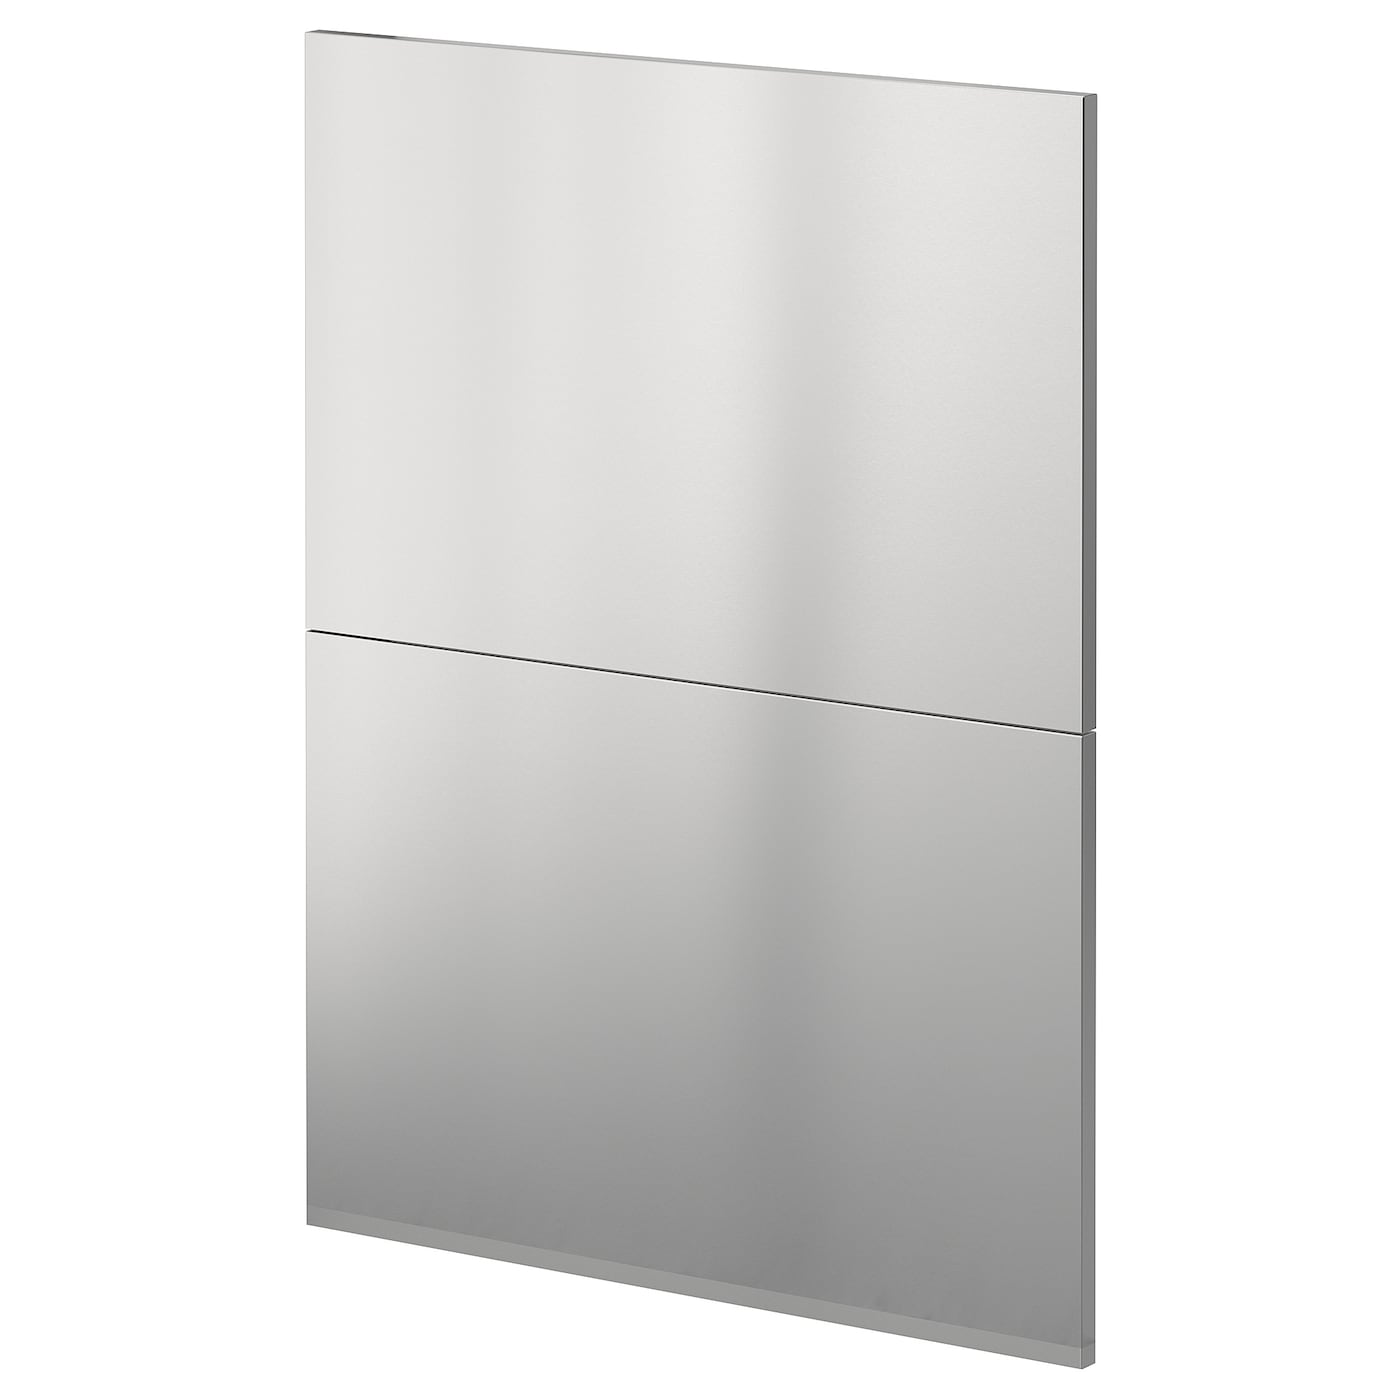 Накладная панель для посудомоечной машины - IKEA METOD, 80х60 см, нержавеющая сталь, МЕТОД ИКЕА